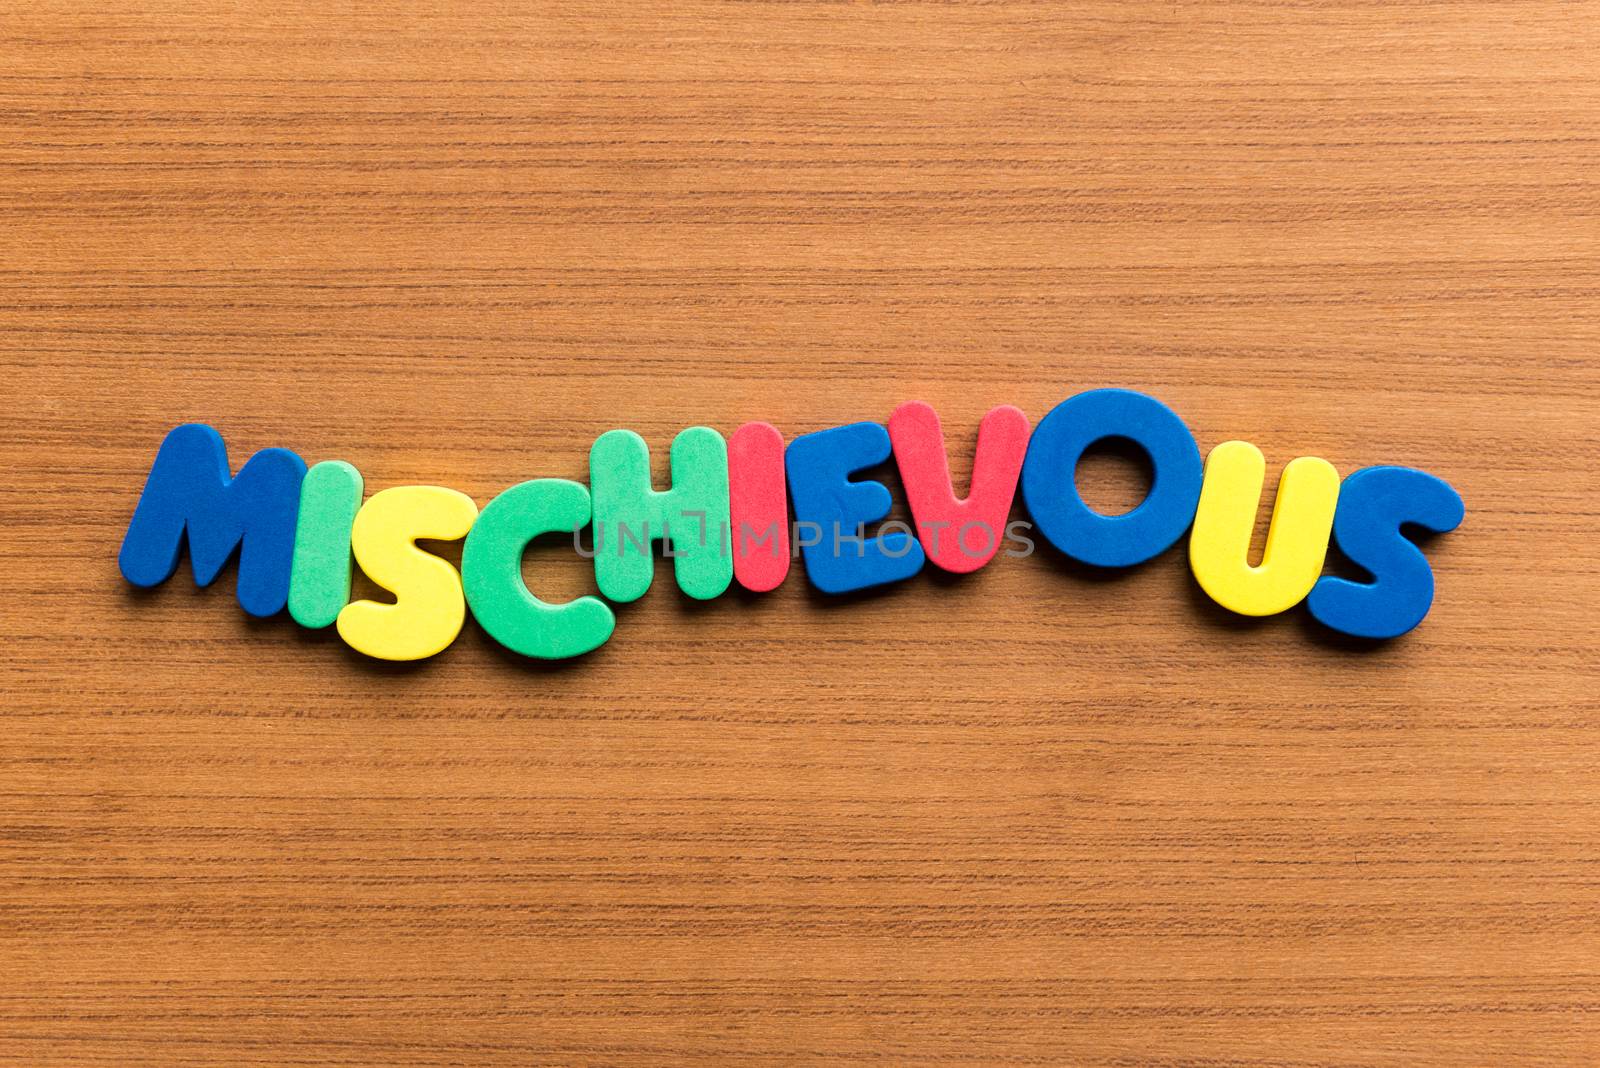 mischievous colorful word by sohel.parvez@hotmail.com